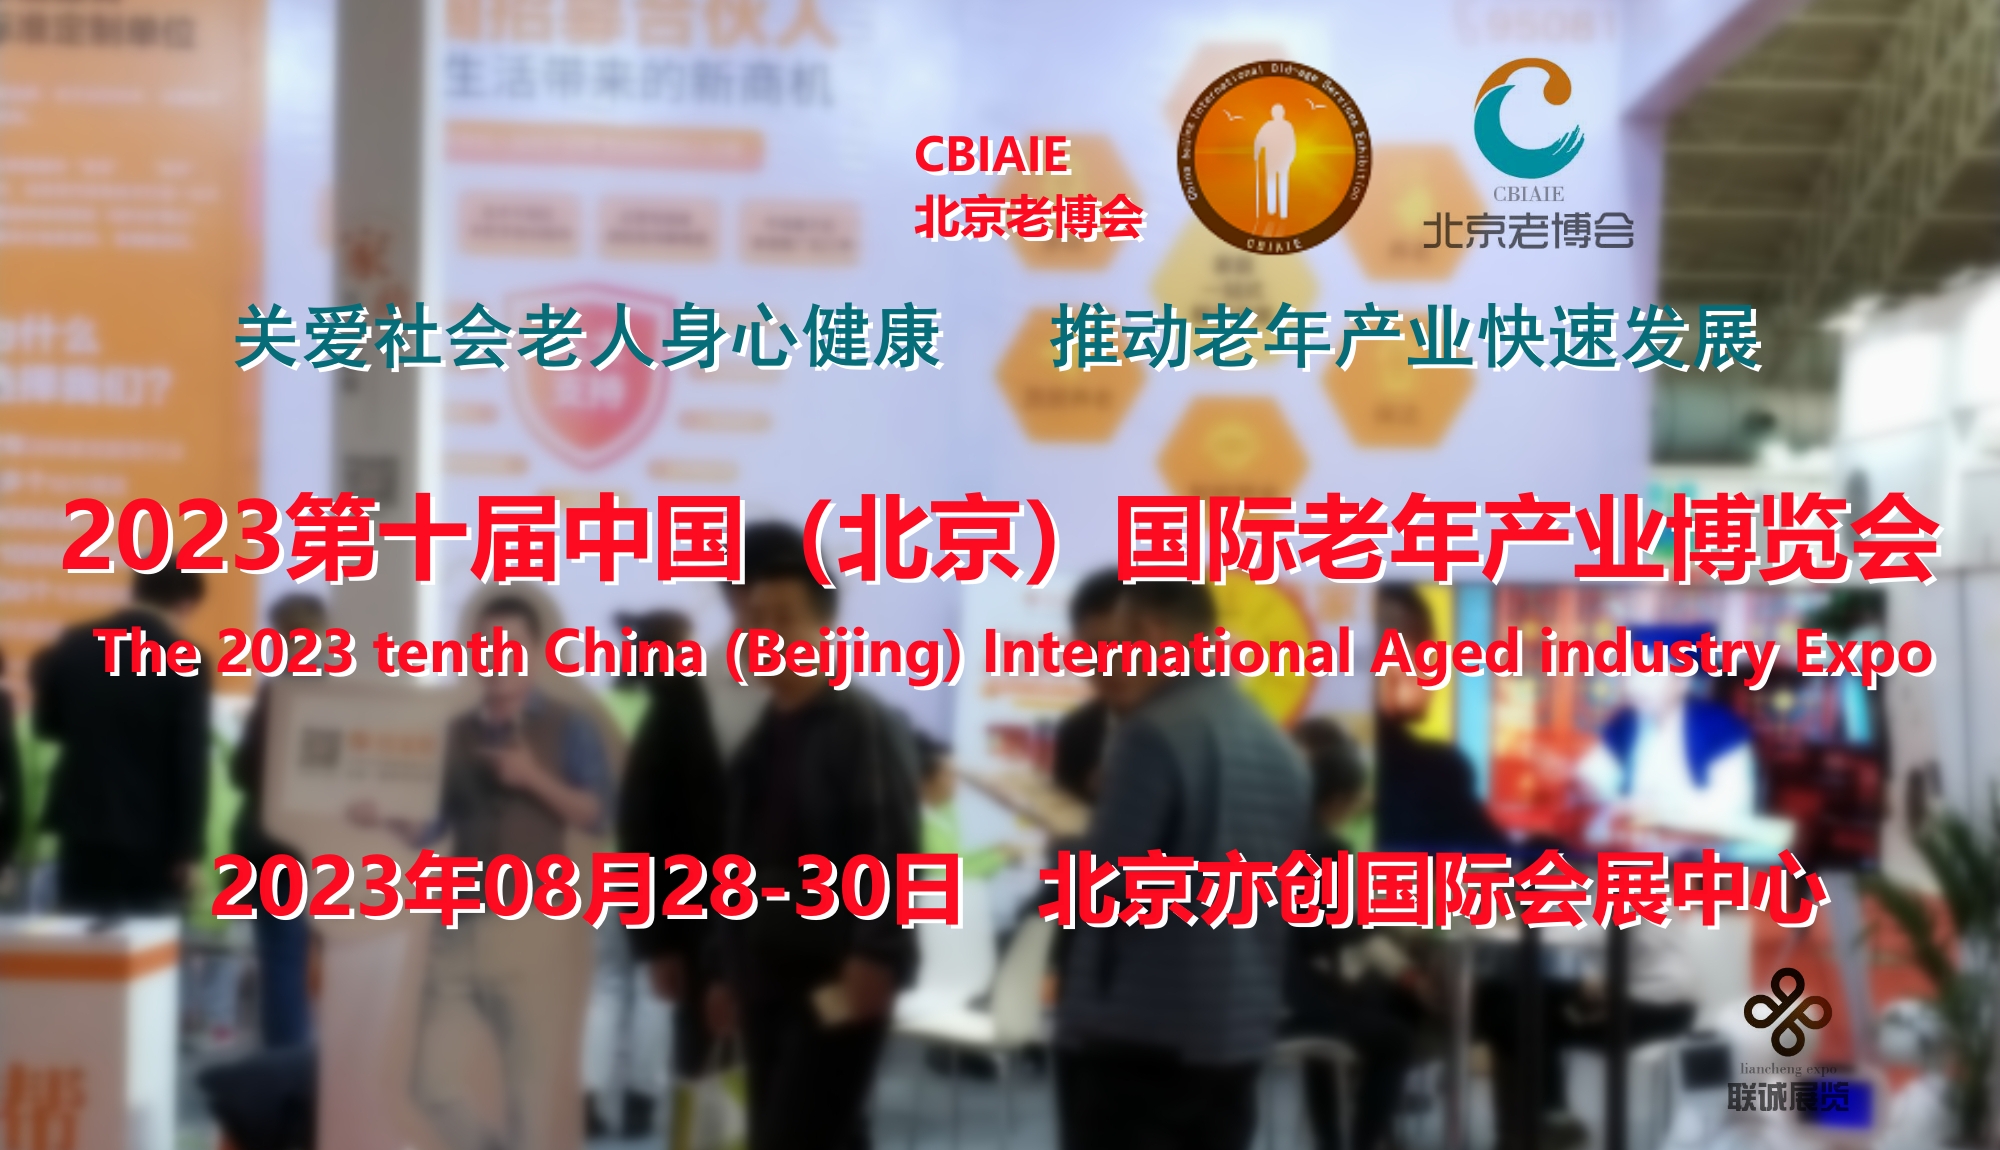 2023北京老博会|推动国内外老年产业快速融合发展